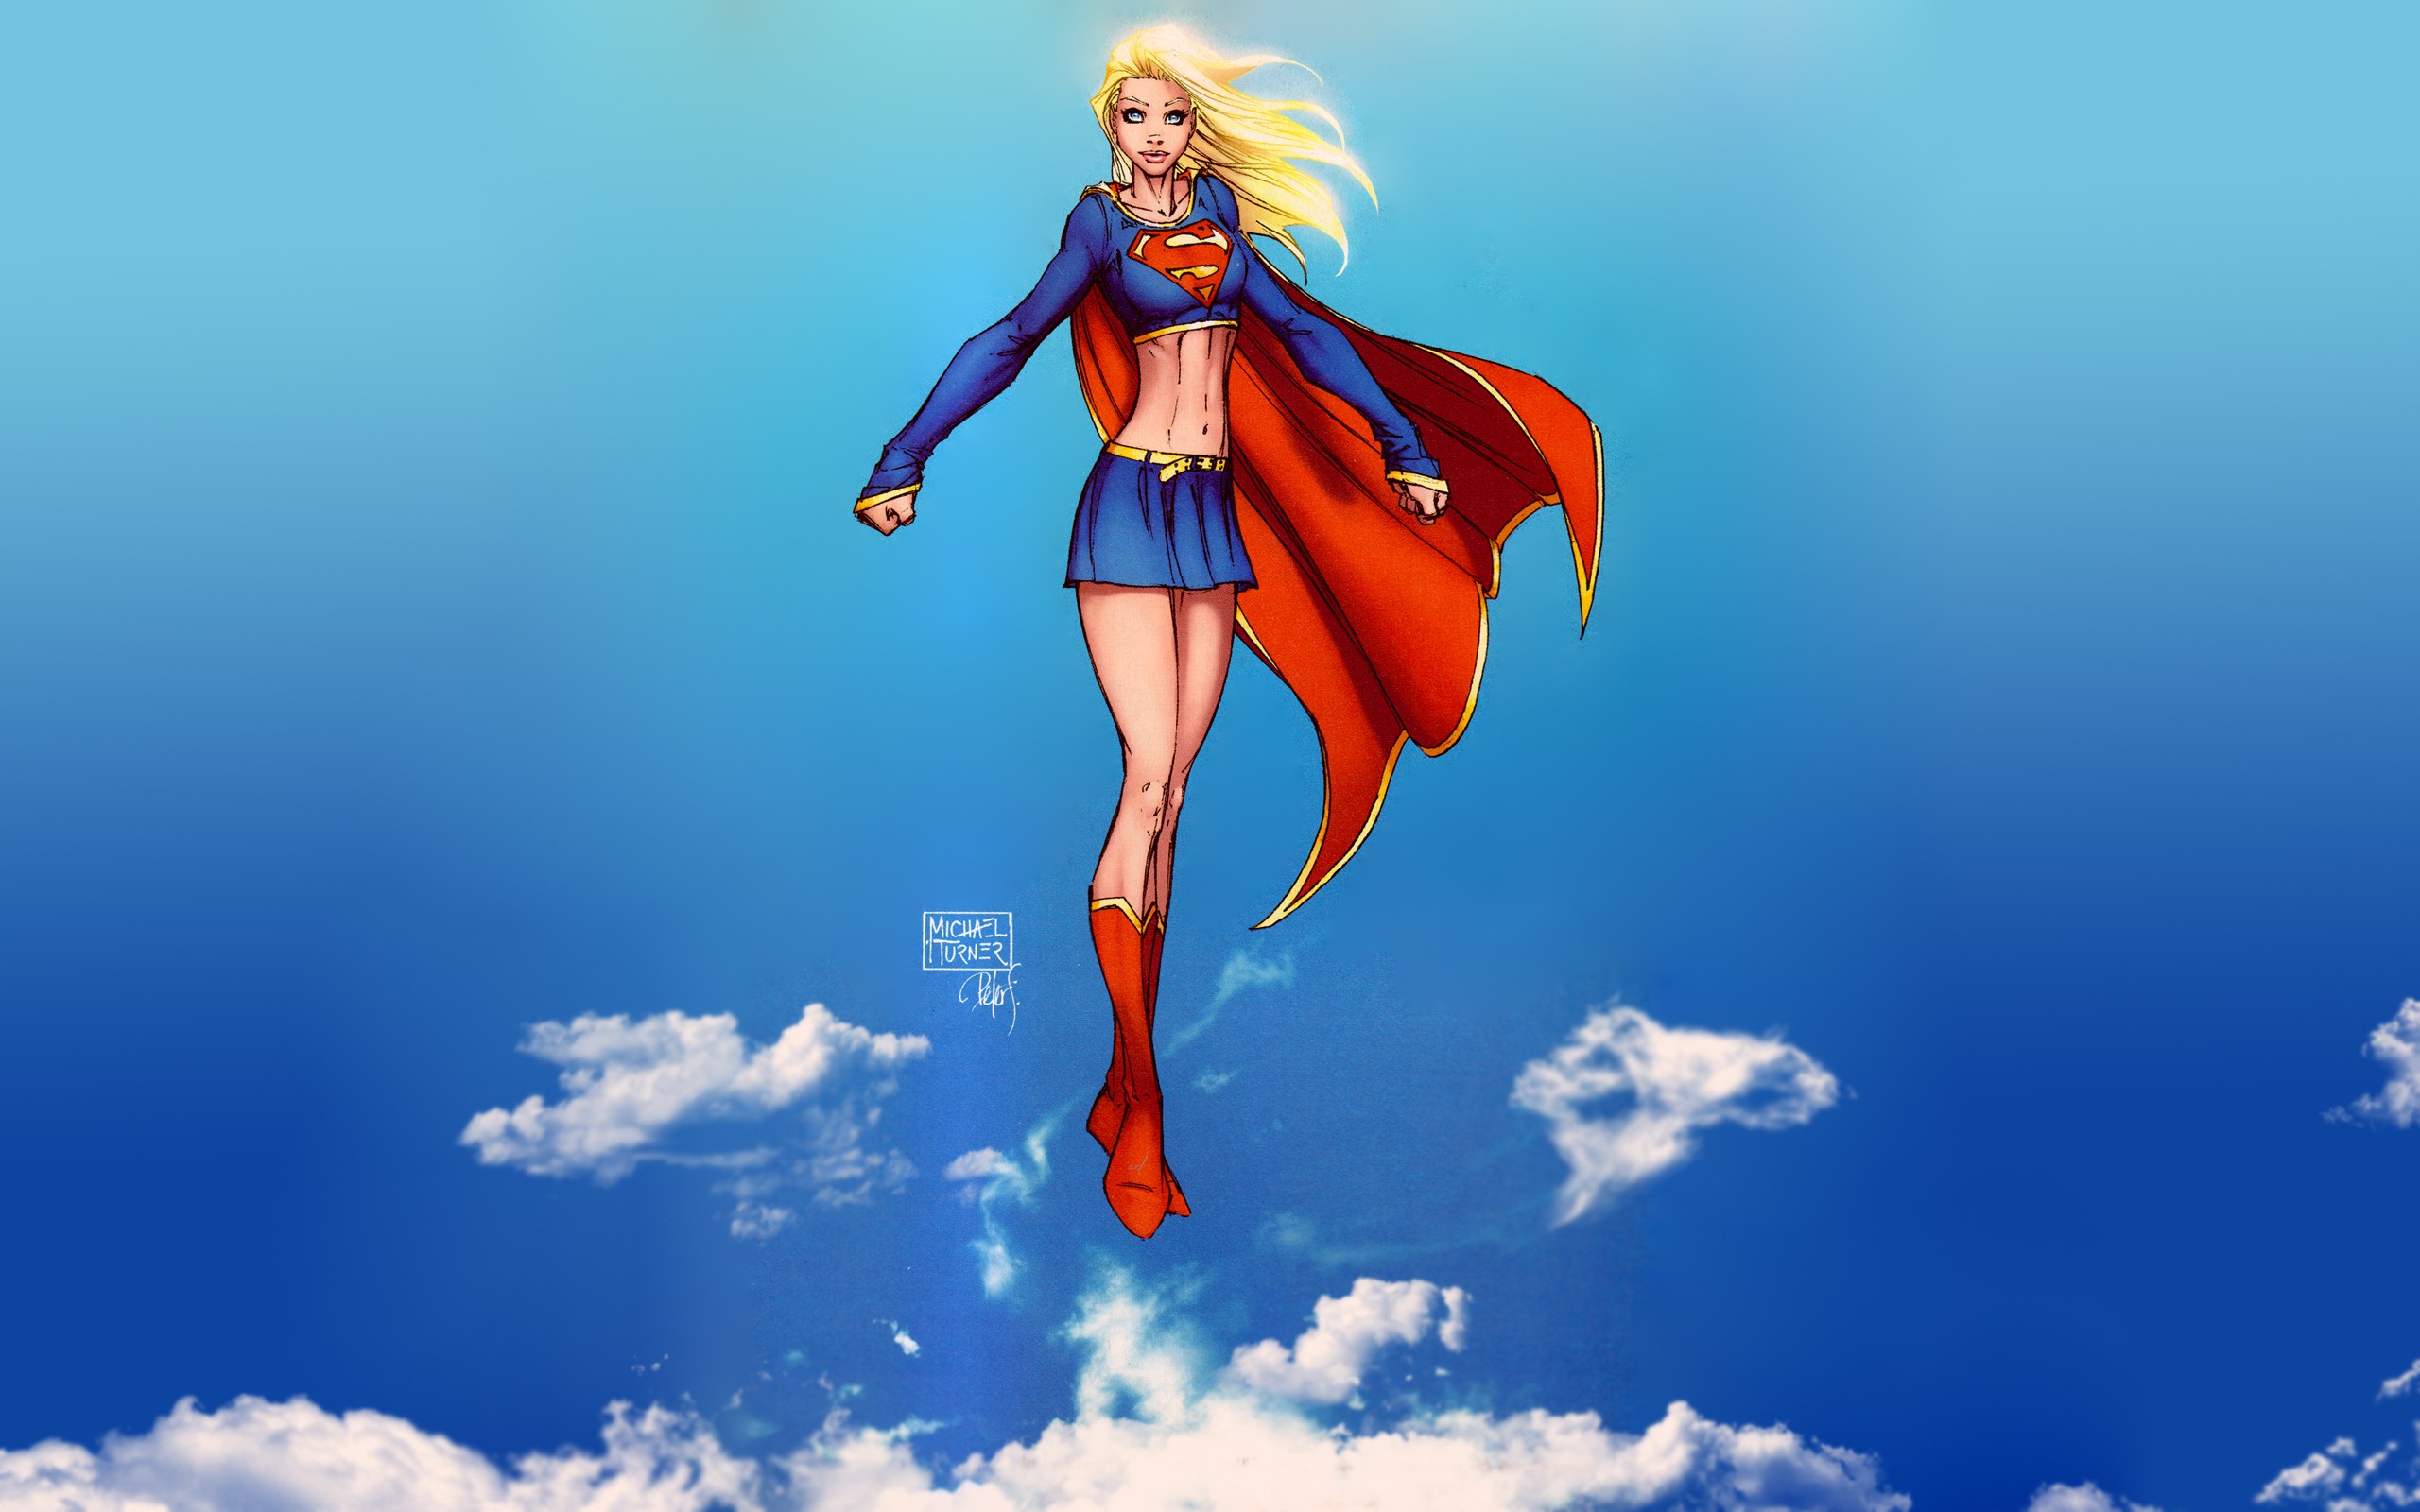 General 2560x1600 Supergirl comics DC Comics Michael Turner superheroines cape digital art watermarked